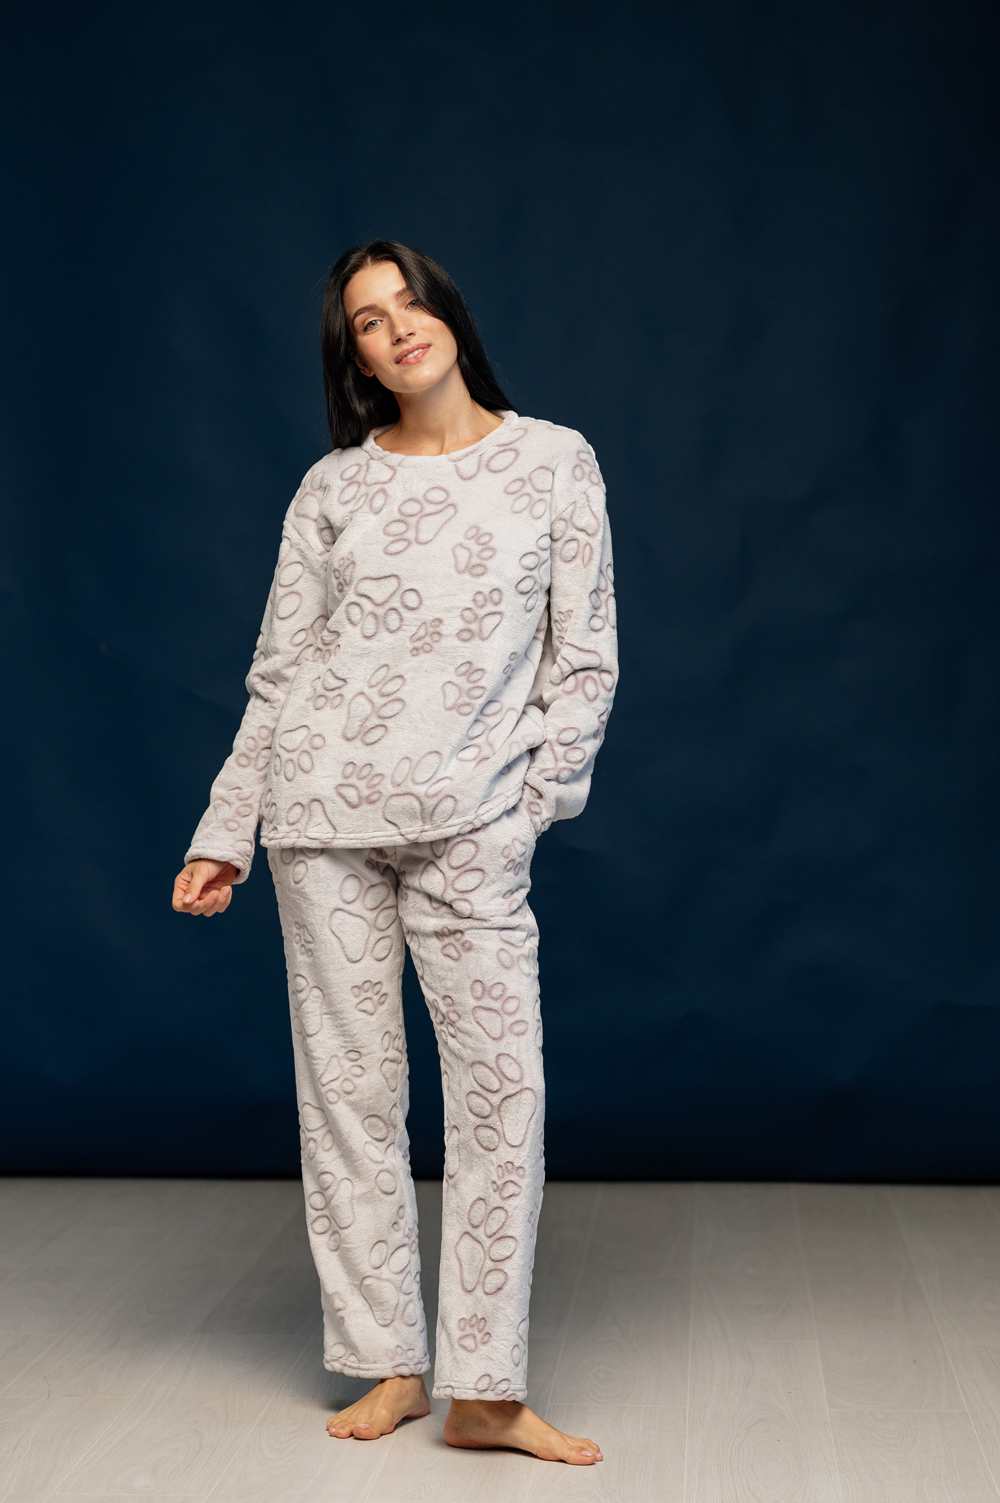 Cozy pajamas in hearts print